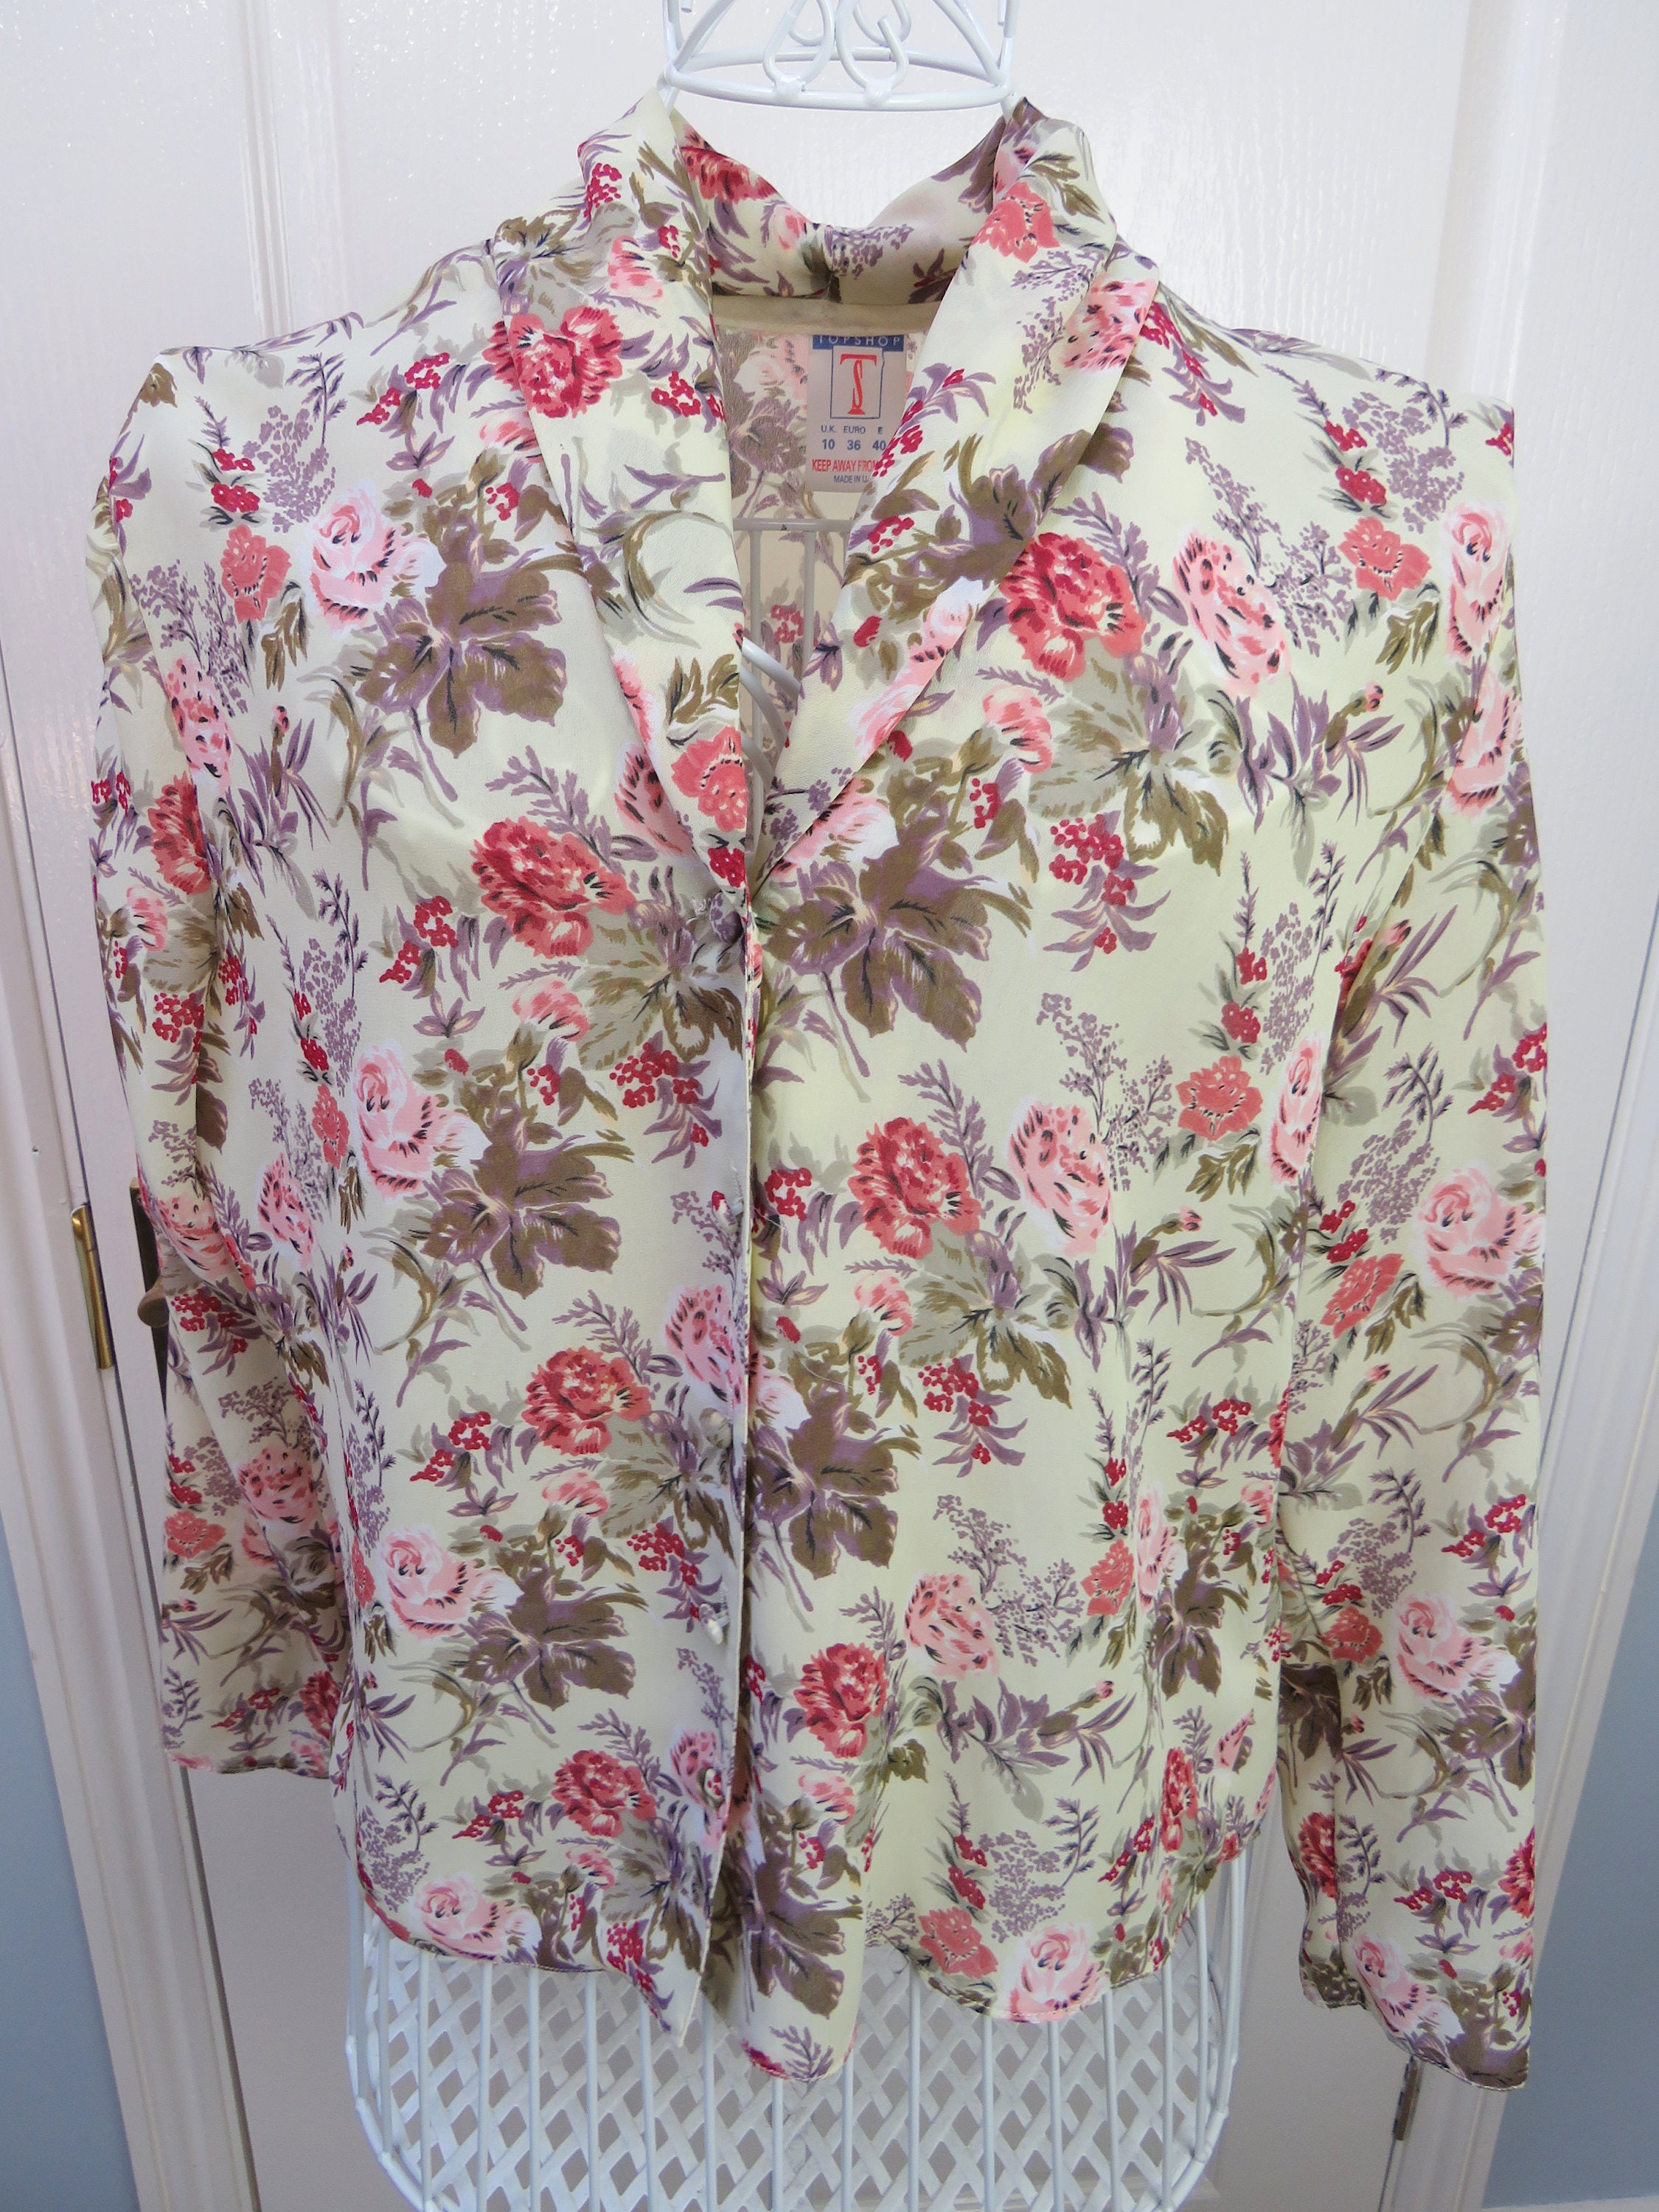 Vintage Blouse Topshop Blouse Floral Blouse Floral Shirt - Etsy UK